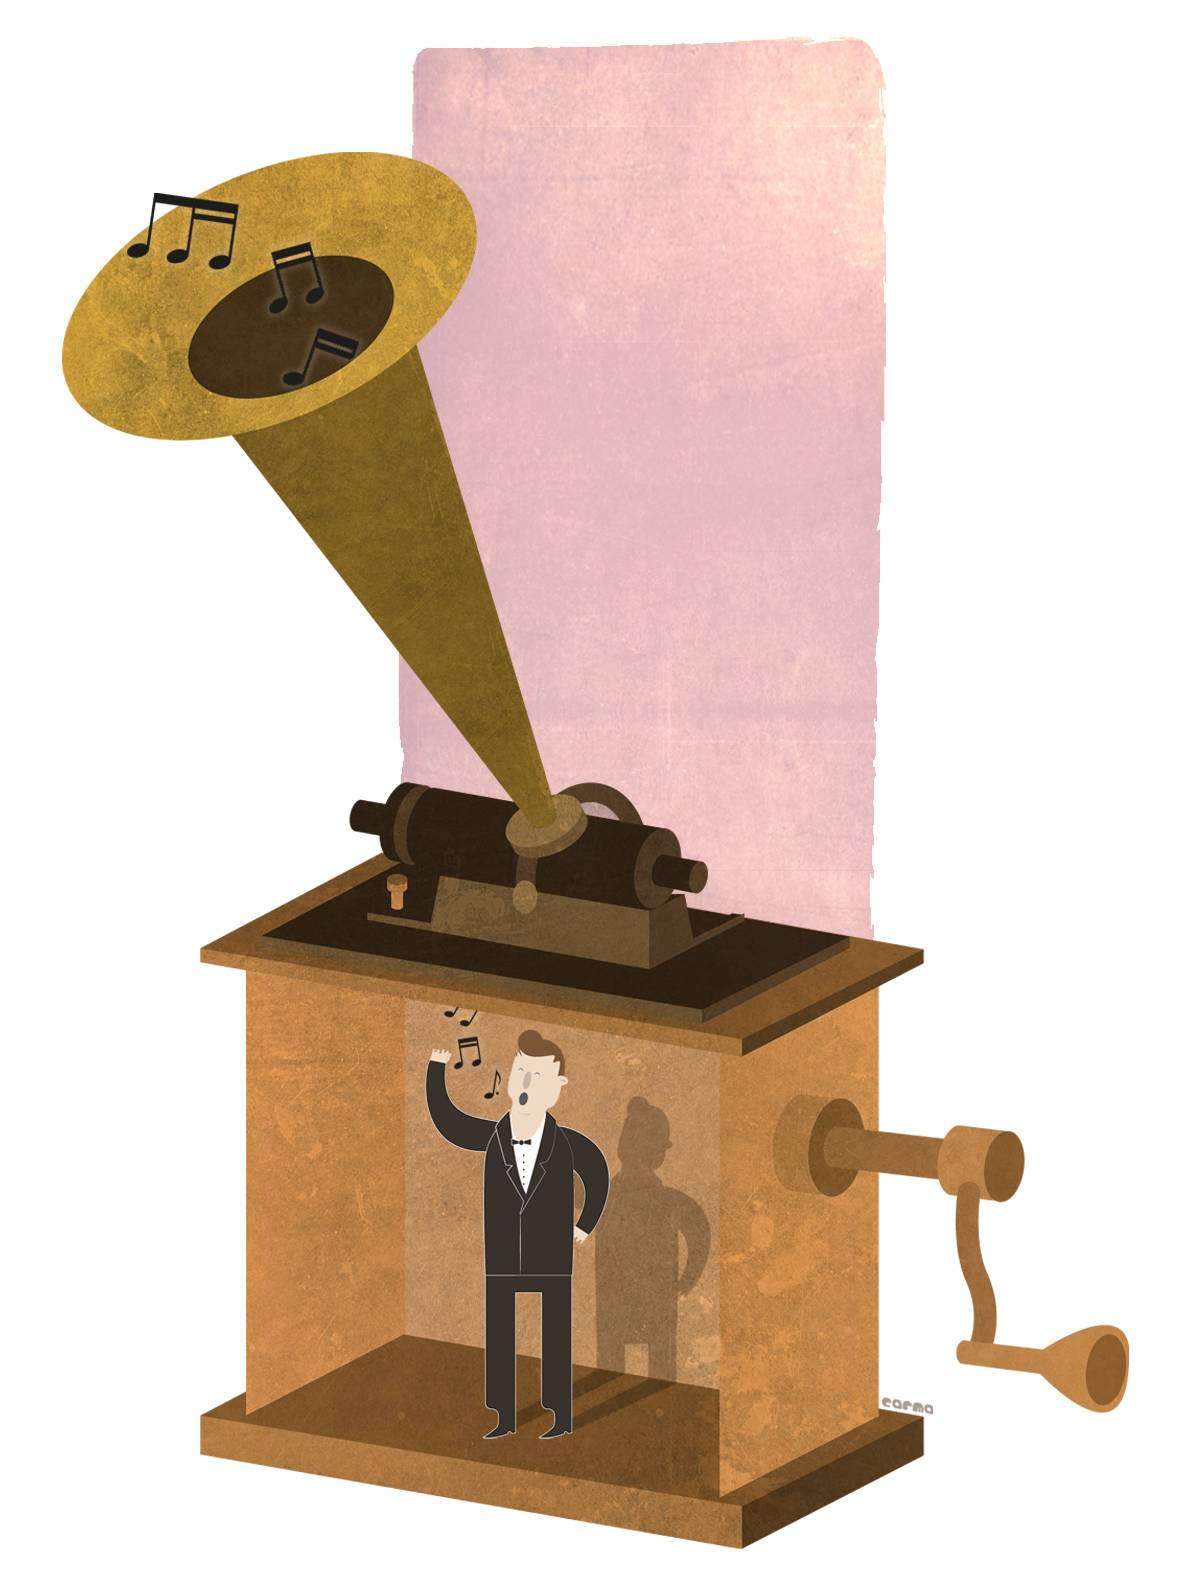 El 21 de noviembre de 1877 Thomas Edison terminó el primer fonógrafo de la historia